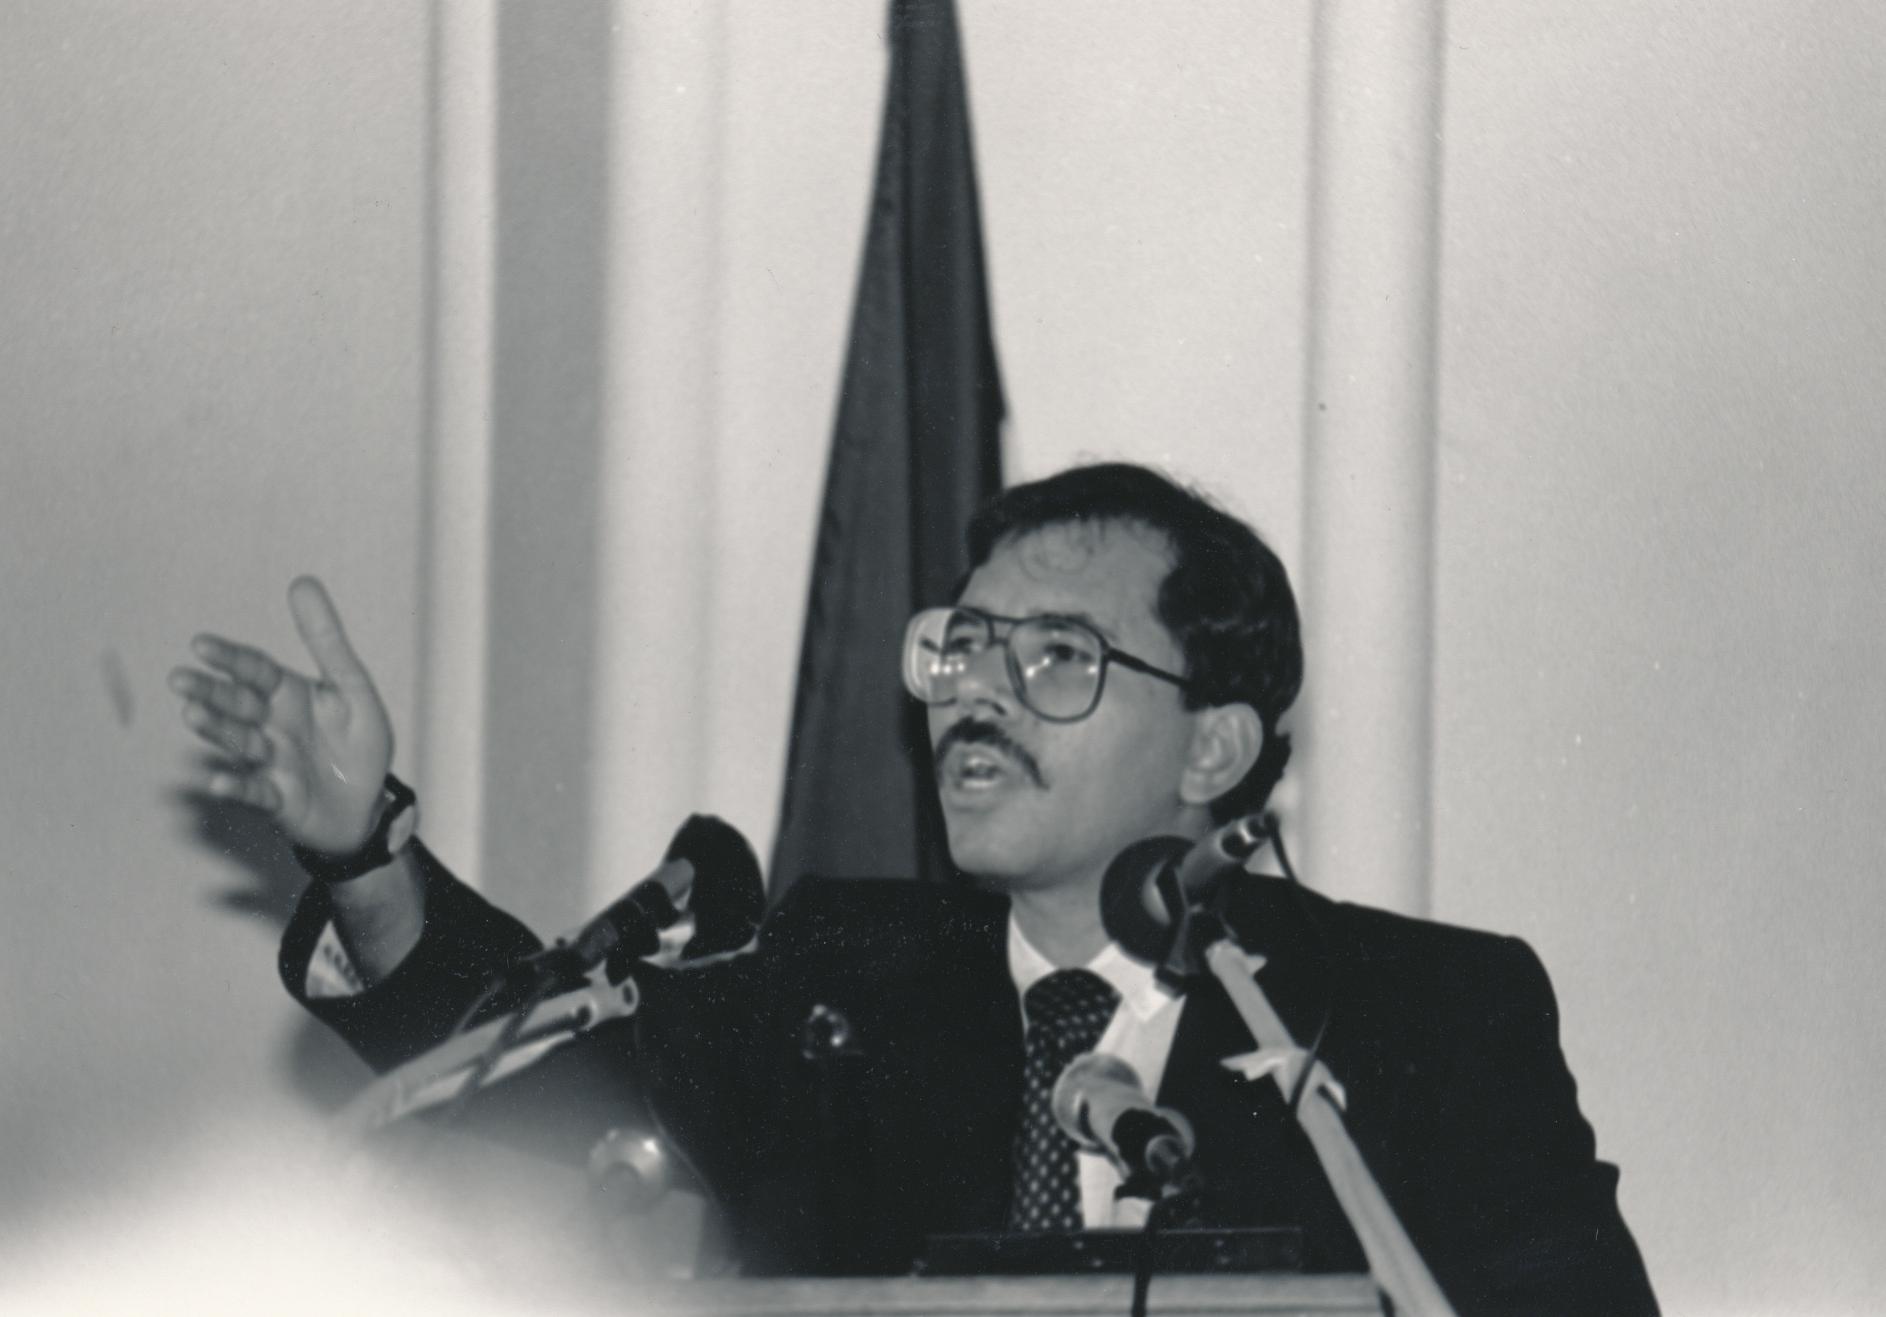 Daniel Ortega, president of Nicaragua, giving a speech